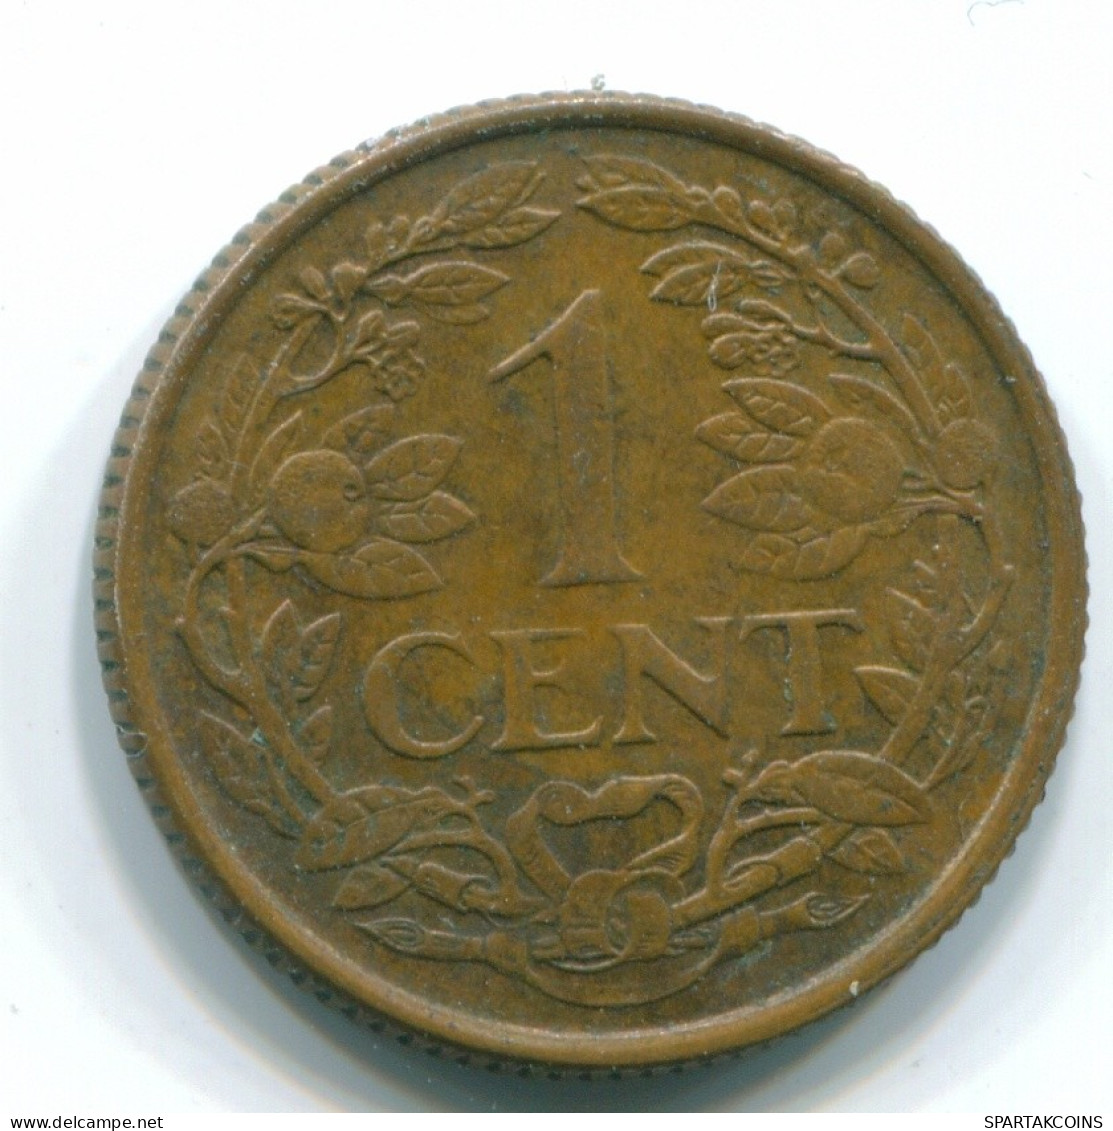 1 CENT 1965 ANTILLAS NEERLANDESAS Bronze Fish Colonial Moneda #S11127.E.A - Antilles Néerlandaises